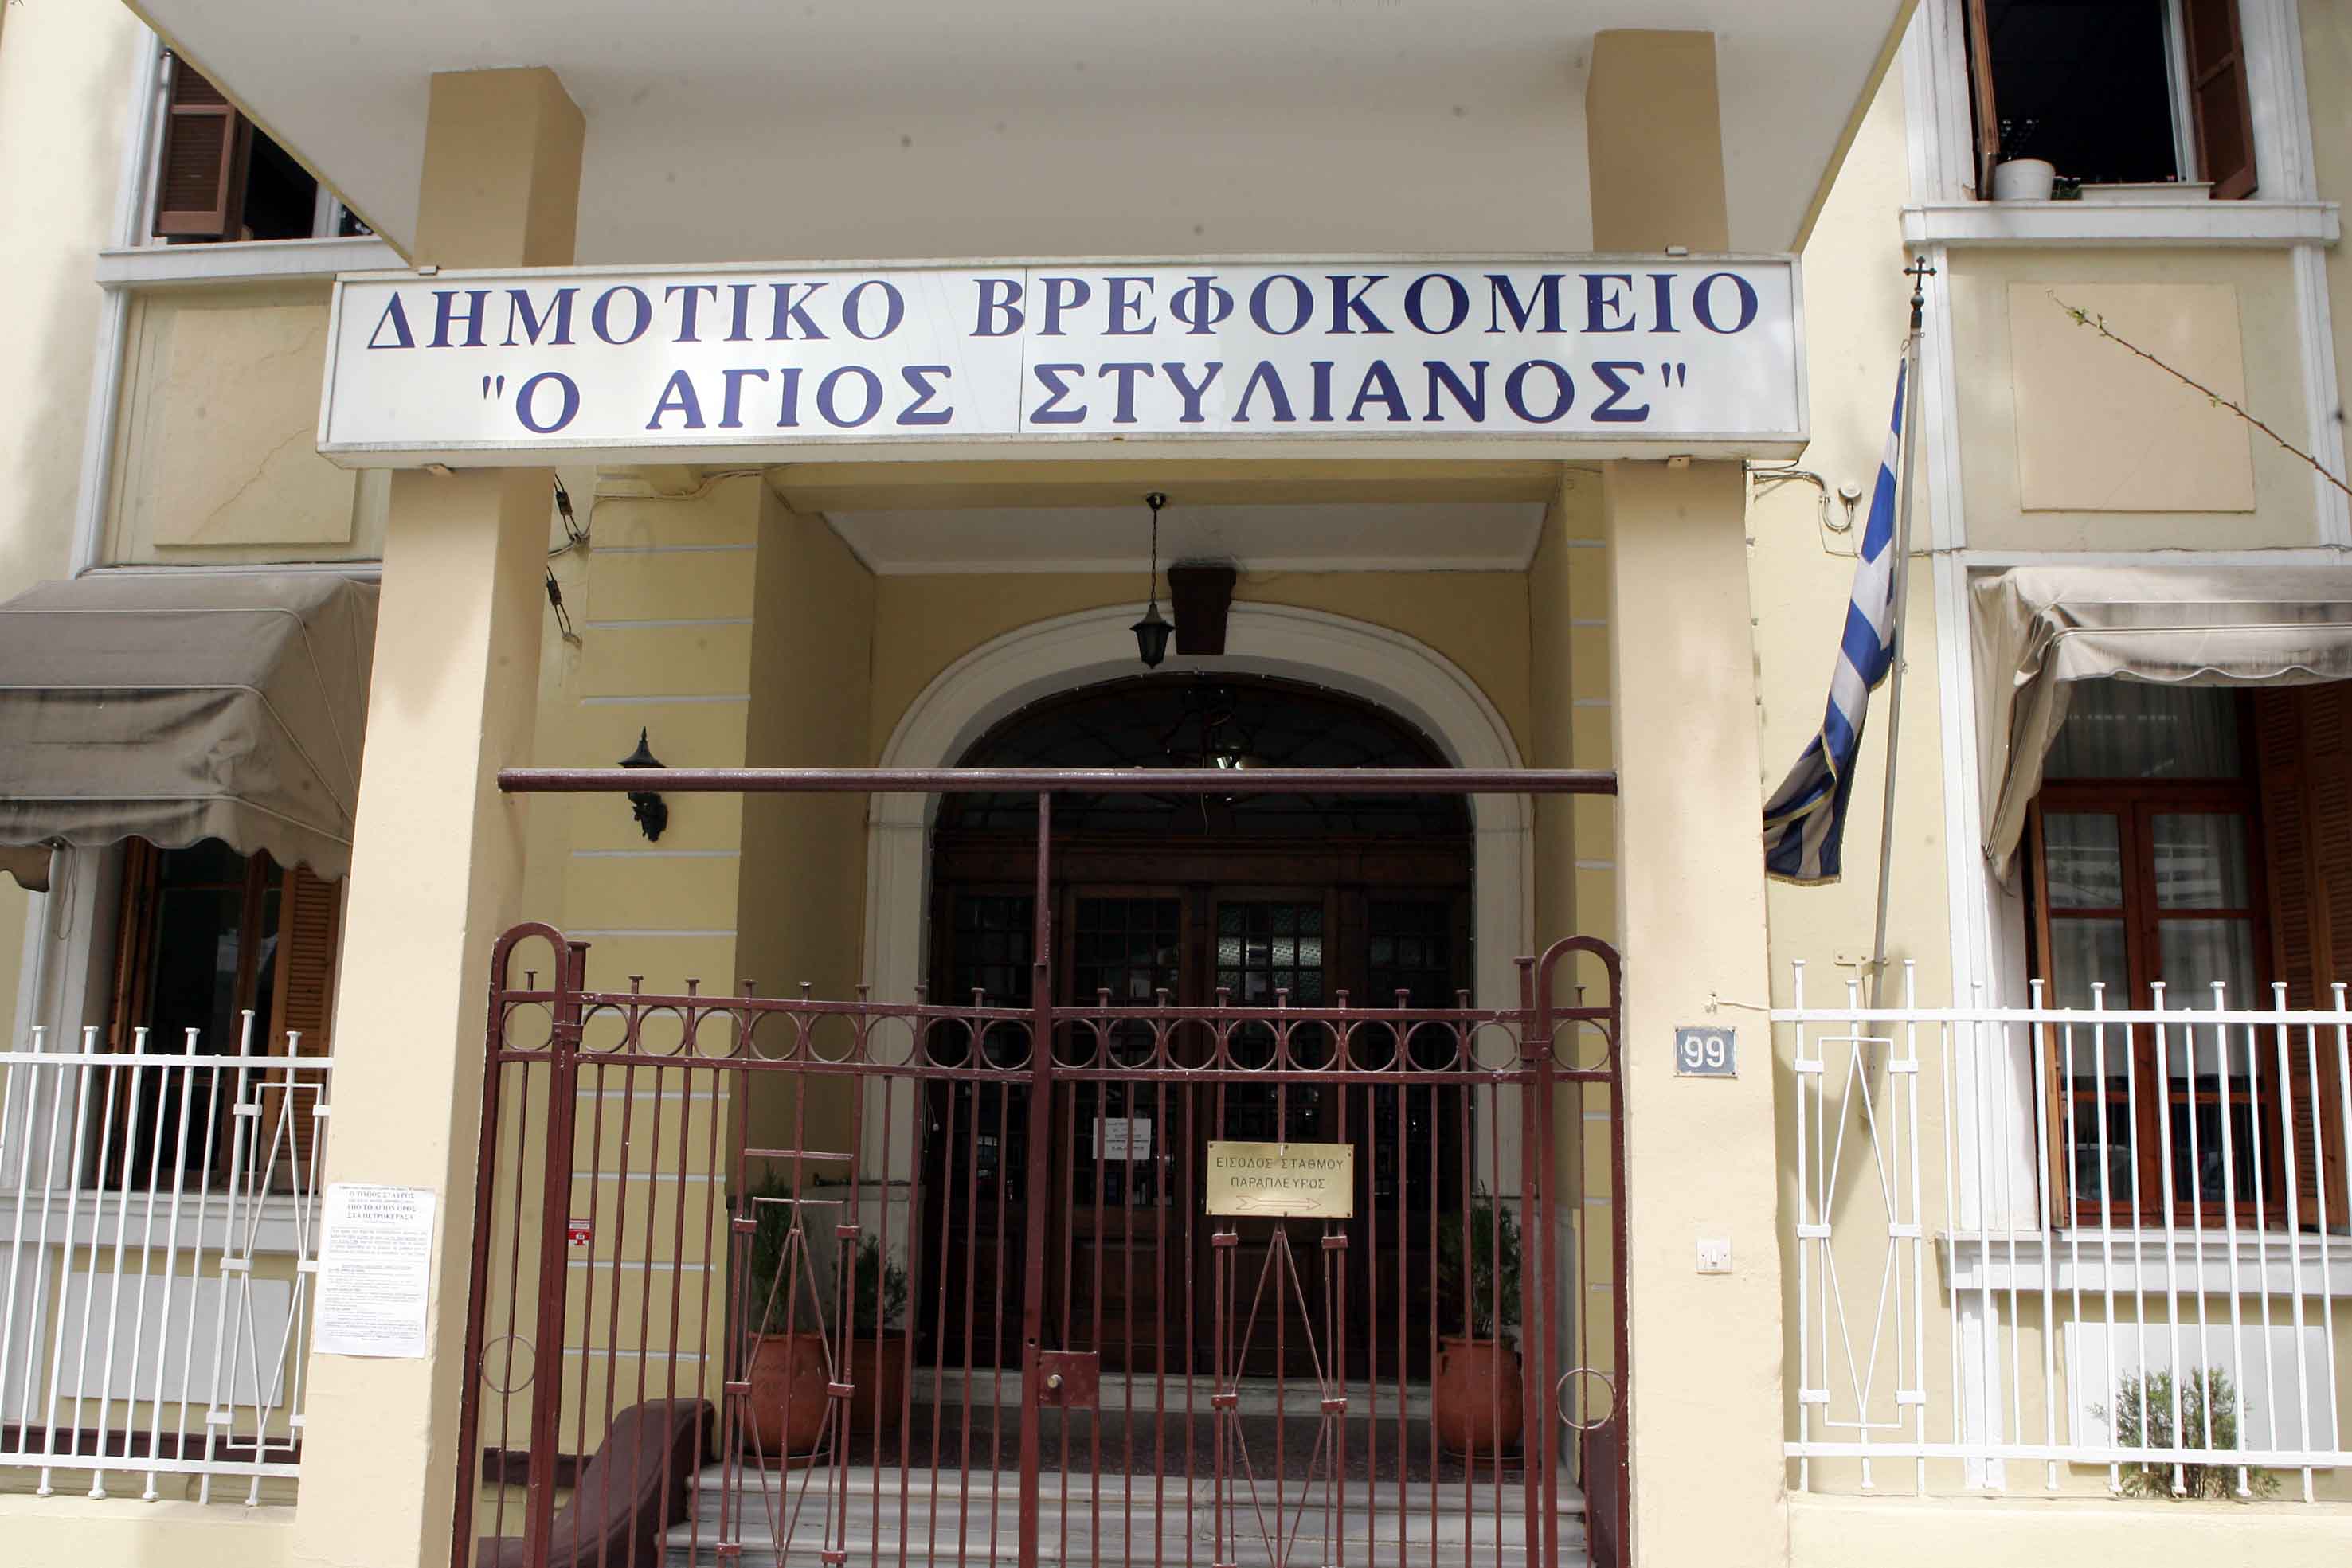 Θεσσαλονίκη: Η μητέρα δεν είχε ενημερωθεί για νοσηλεία του 2,5 ετών παιδιού